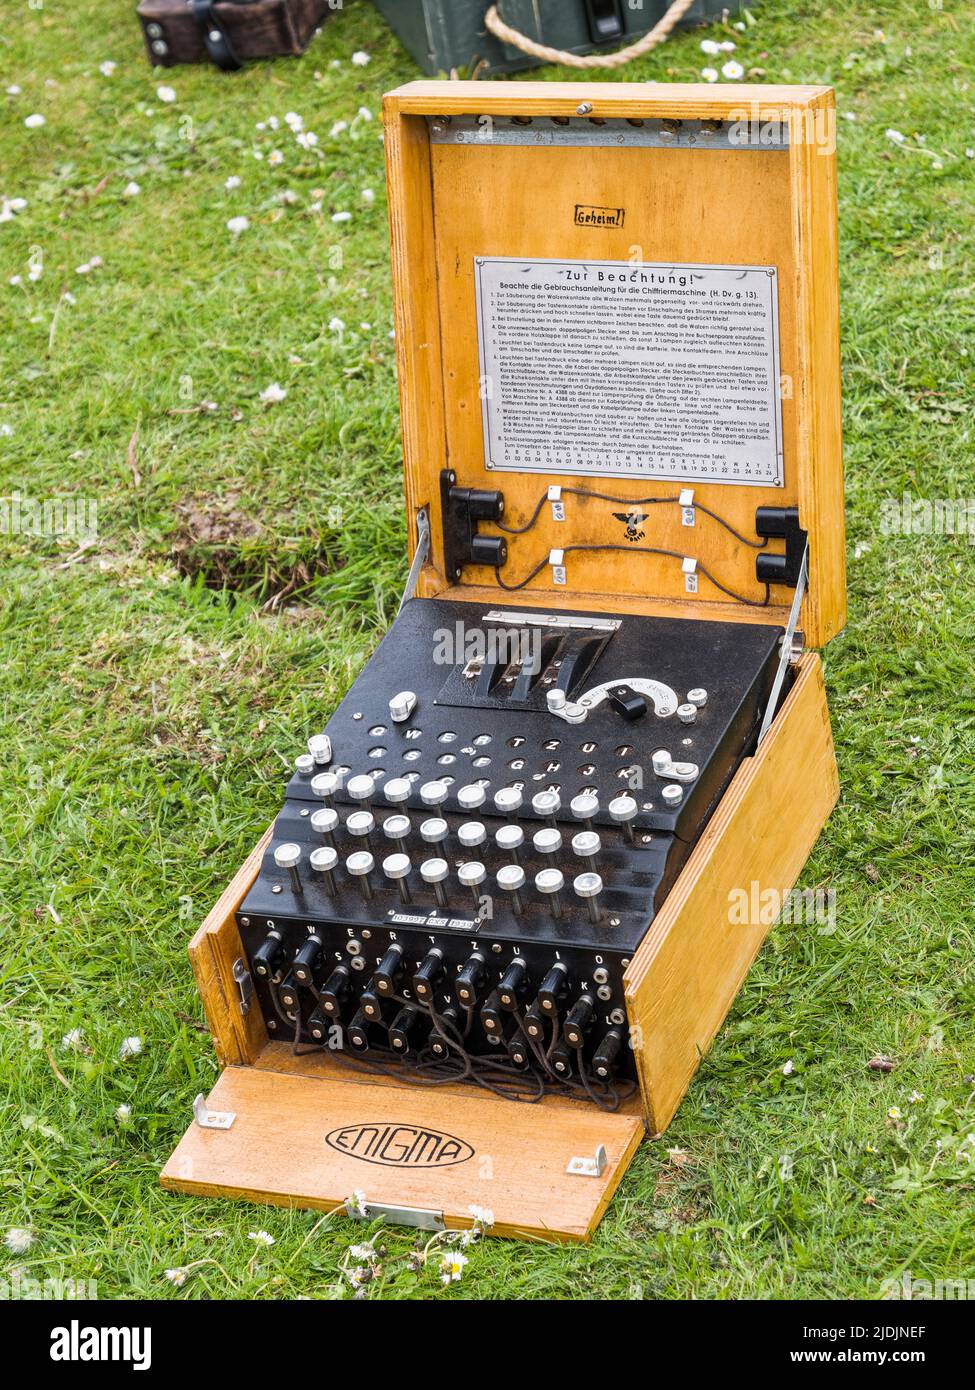 Enigma-Maschine, die von Arthur Scherbius entwickelt wurde, um Nachrichten zu kodieren. Stockfoto